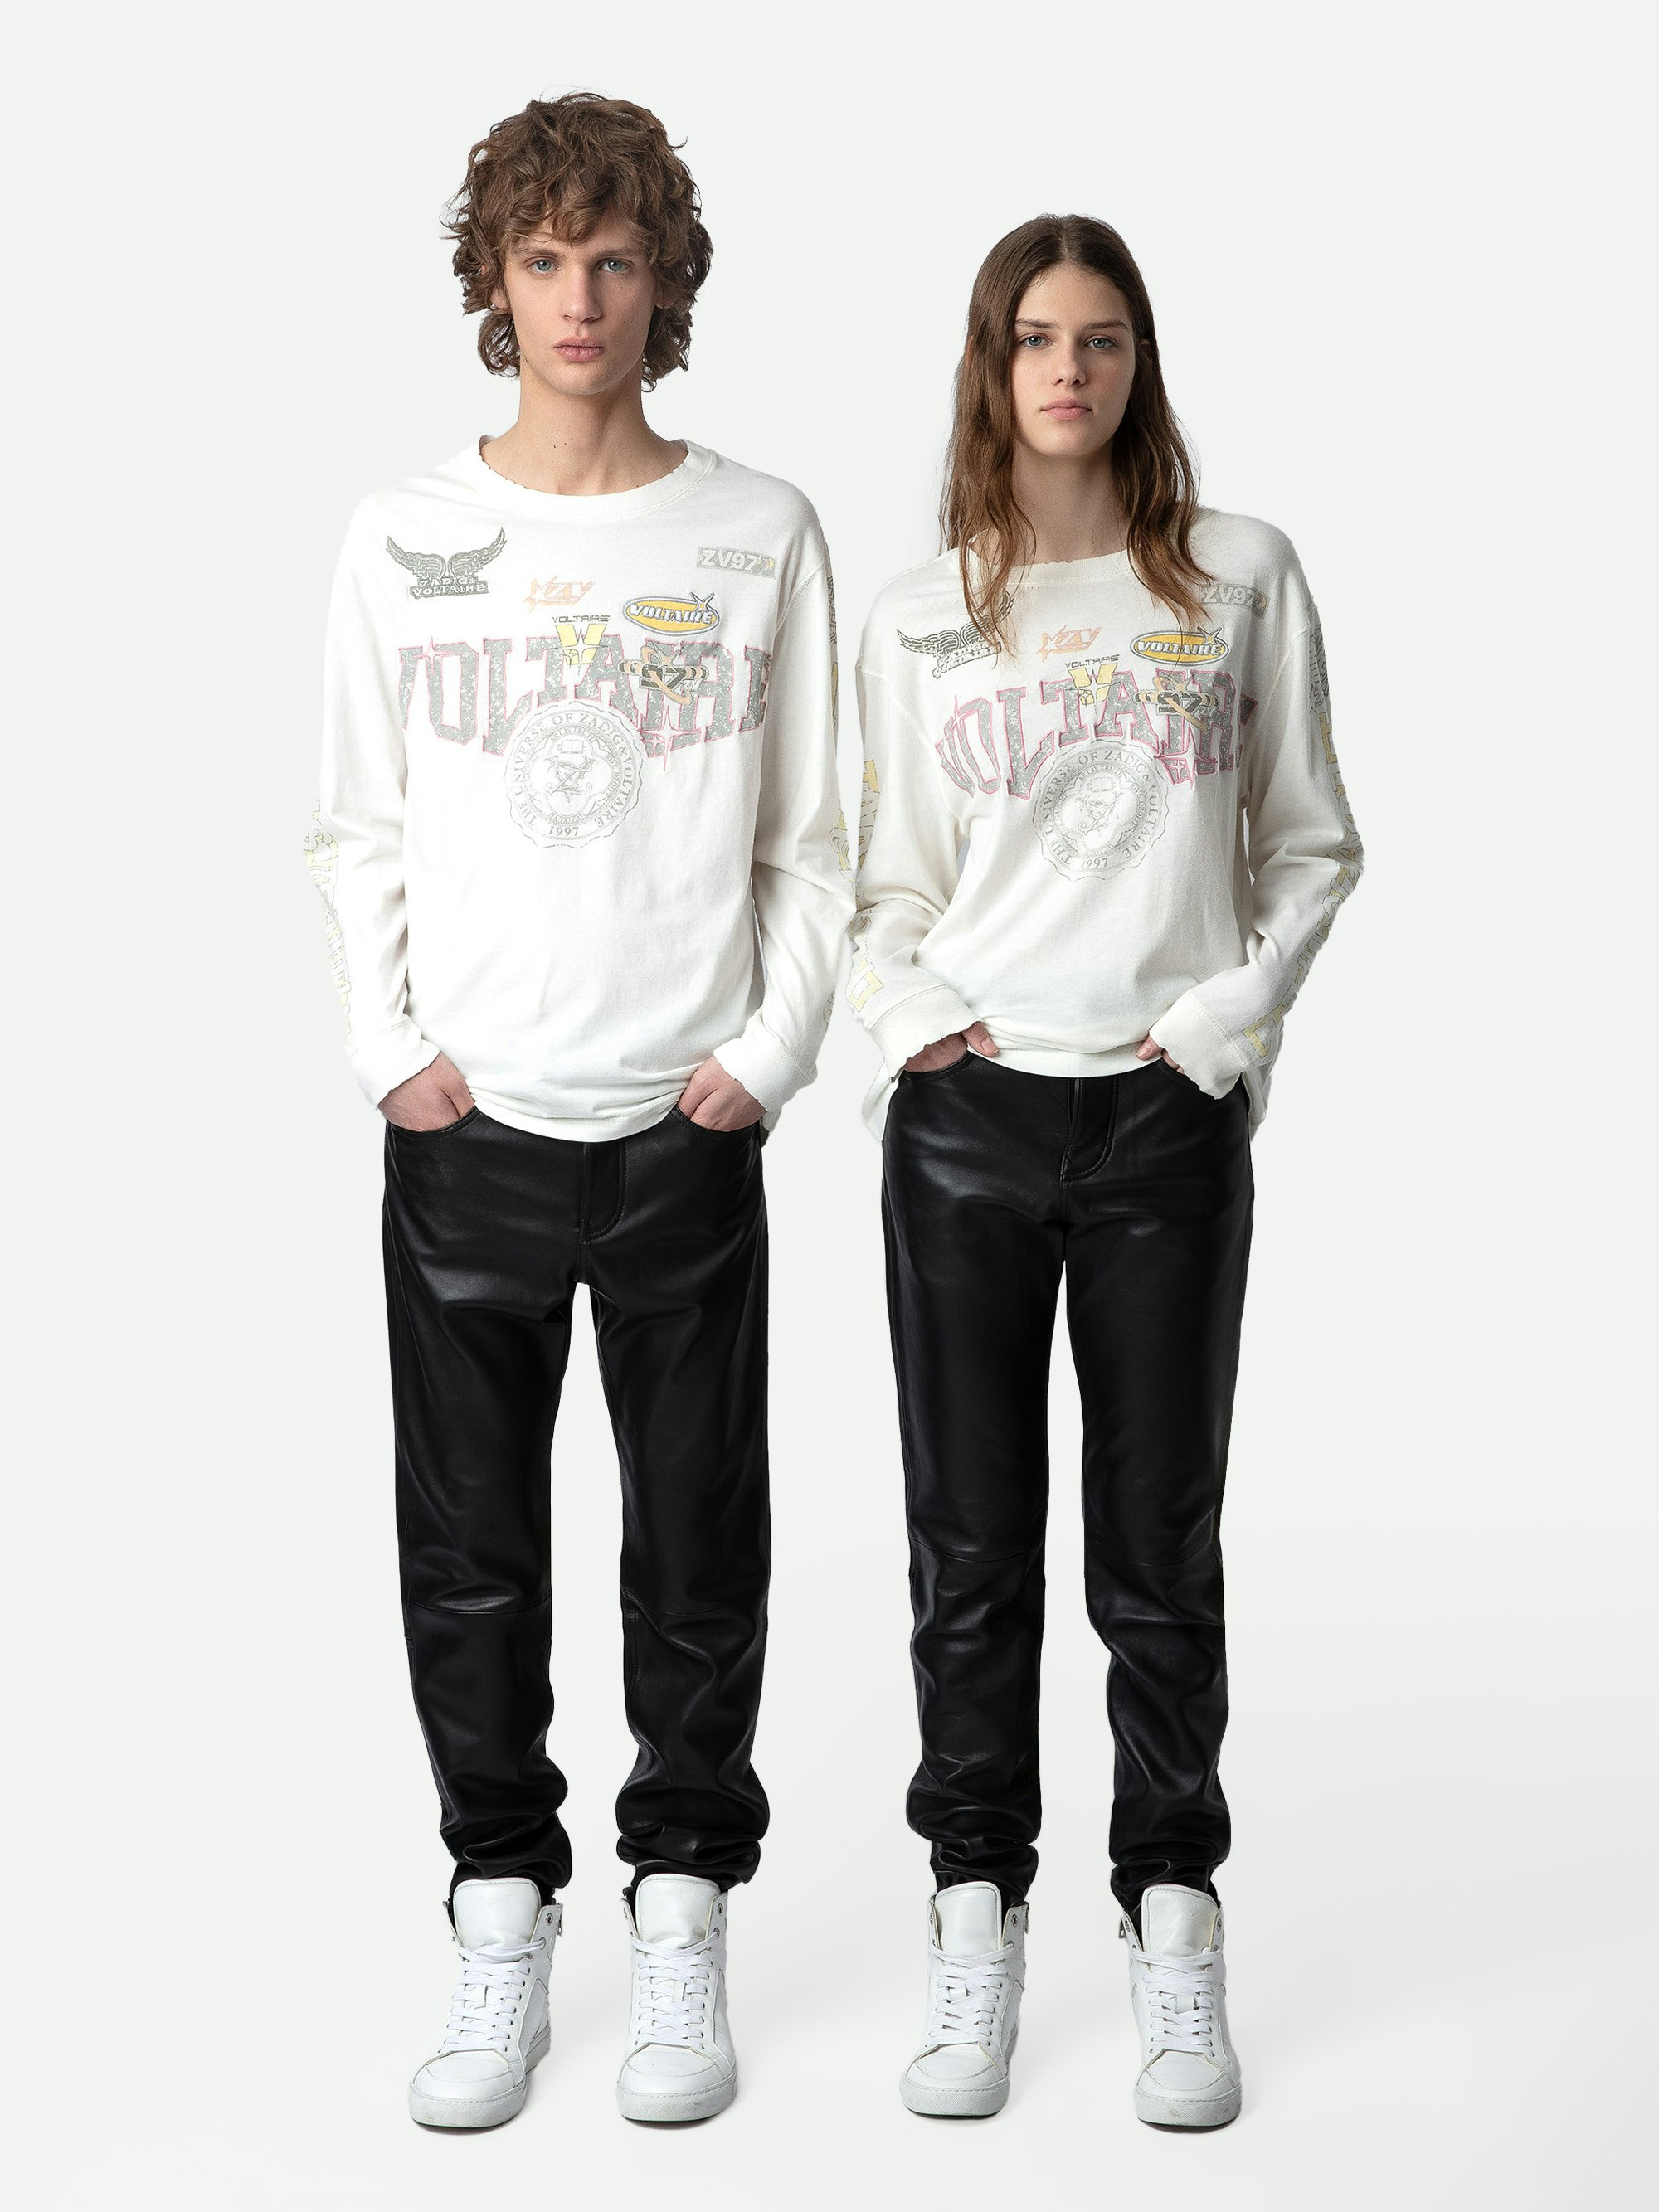 T-shirt Noane Voltaire - T-shirt a maniche lunghe di cotone ecru in stile biker con motivi con stemmi Voltaire e imbottita sui gomiti.